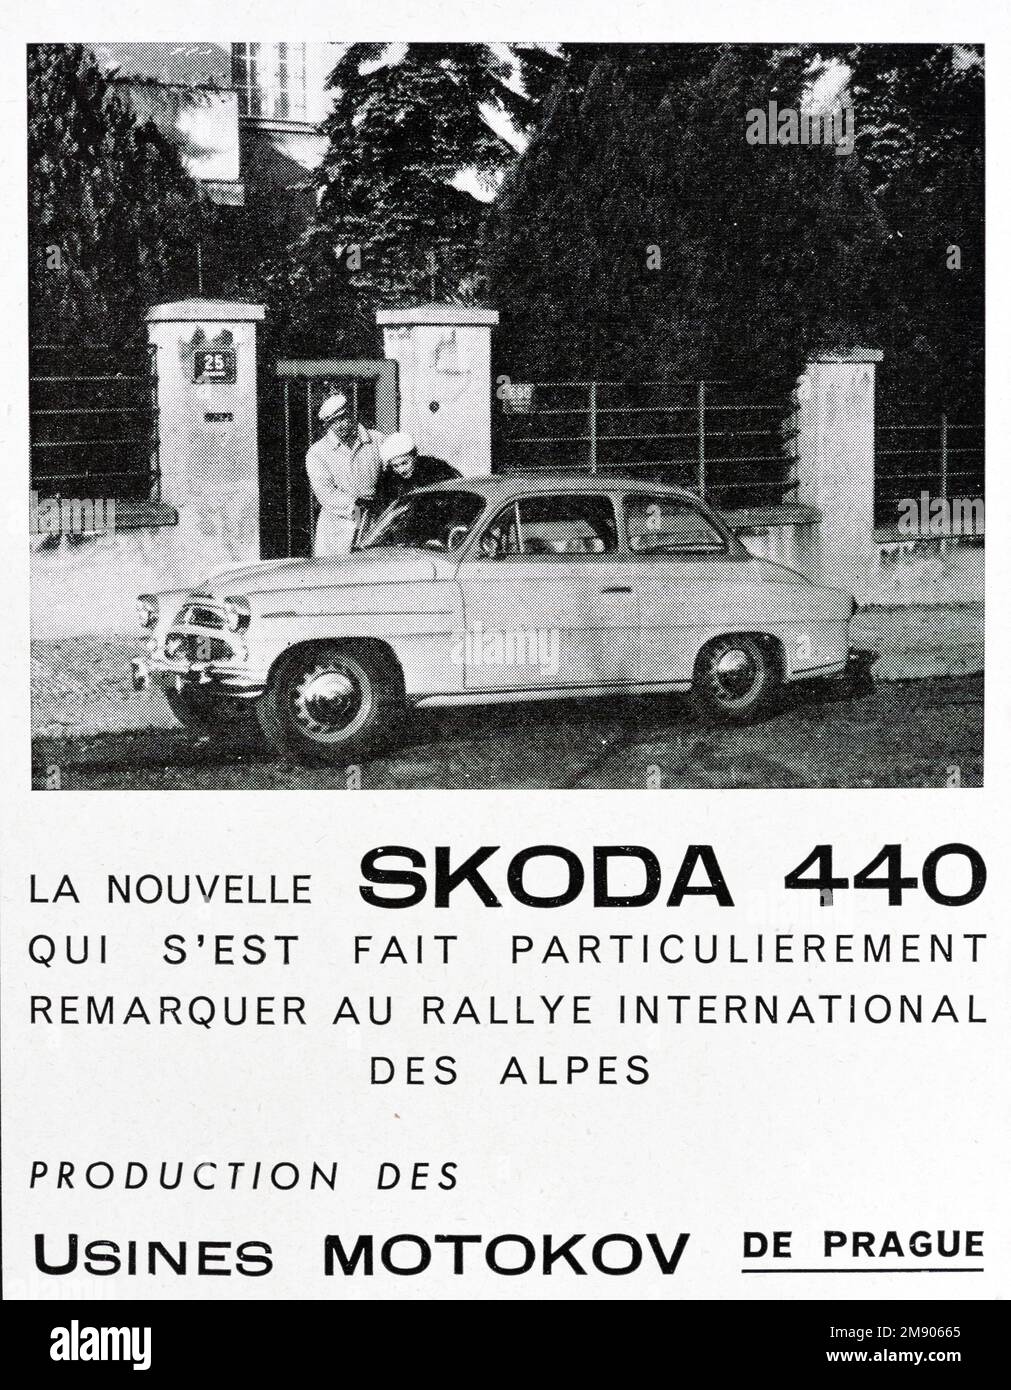 Vintage o antiguo anuncio, anuncio, publicidad o ilustración para Skoda 440 Saloon Anuncio 1956. El Skoda 440, también conocido como 440 Spartak, fue fabricado por AZNP en Checoslovaquia entre 1955 y 1959. Foto de stock